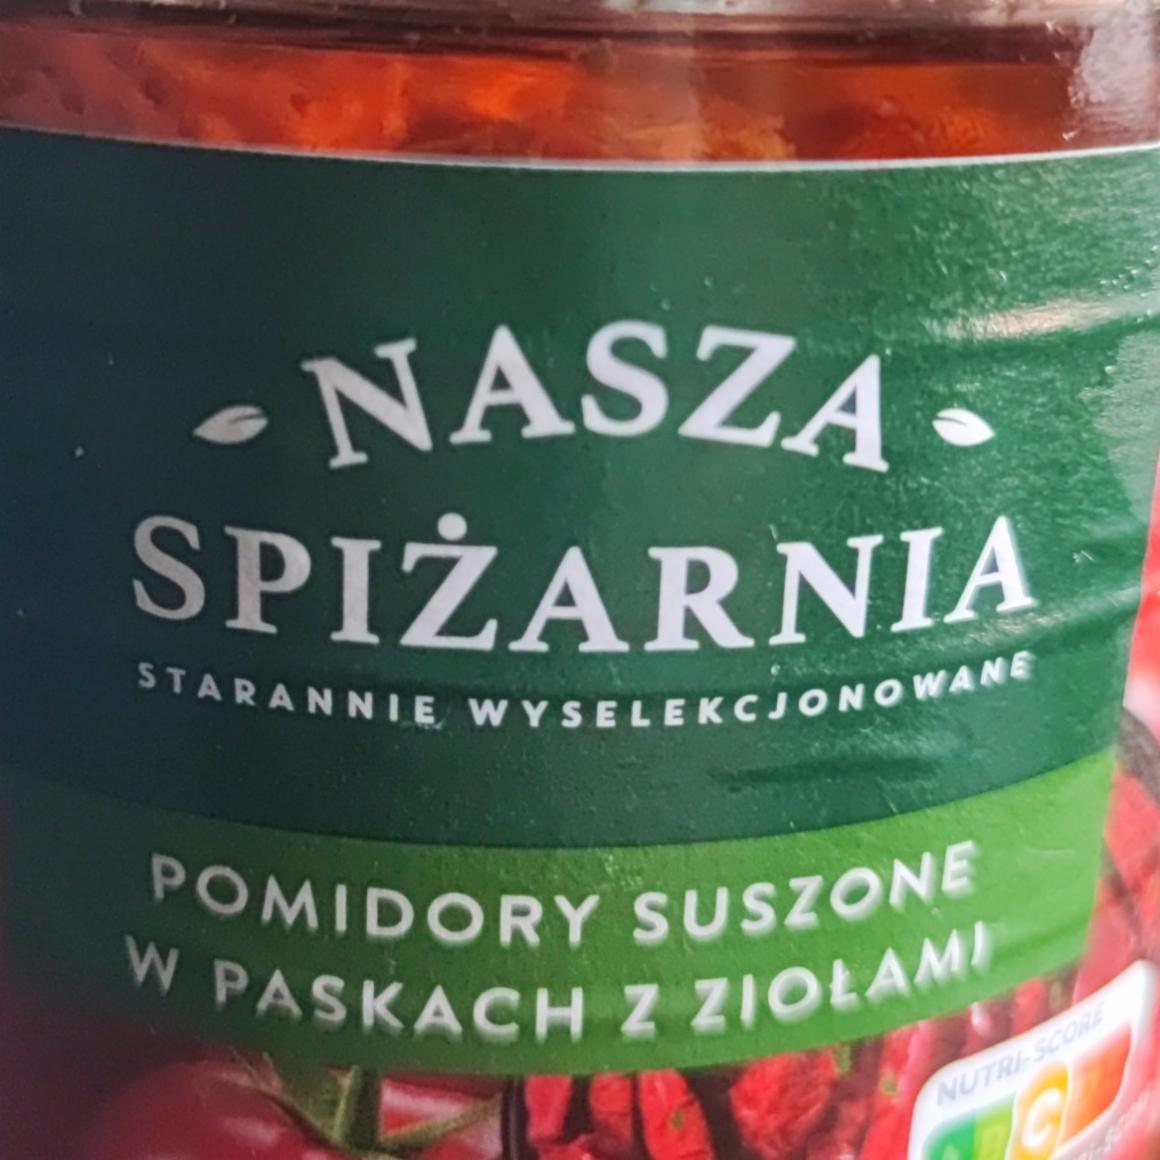 Fotografie - Pomidory suszone w paskach z ziolami Nasza Spiżarnia